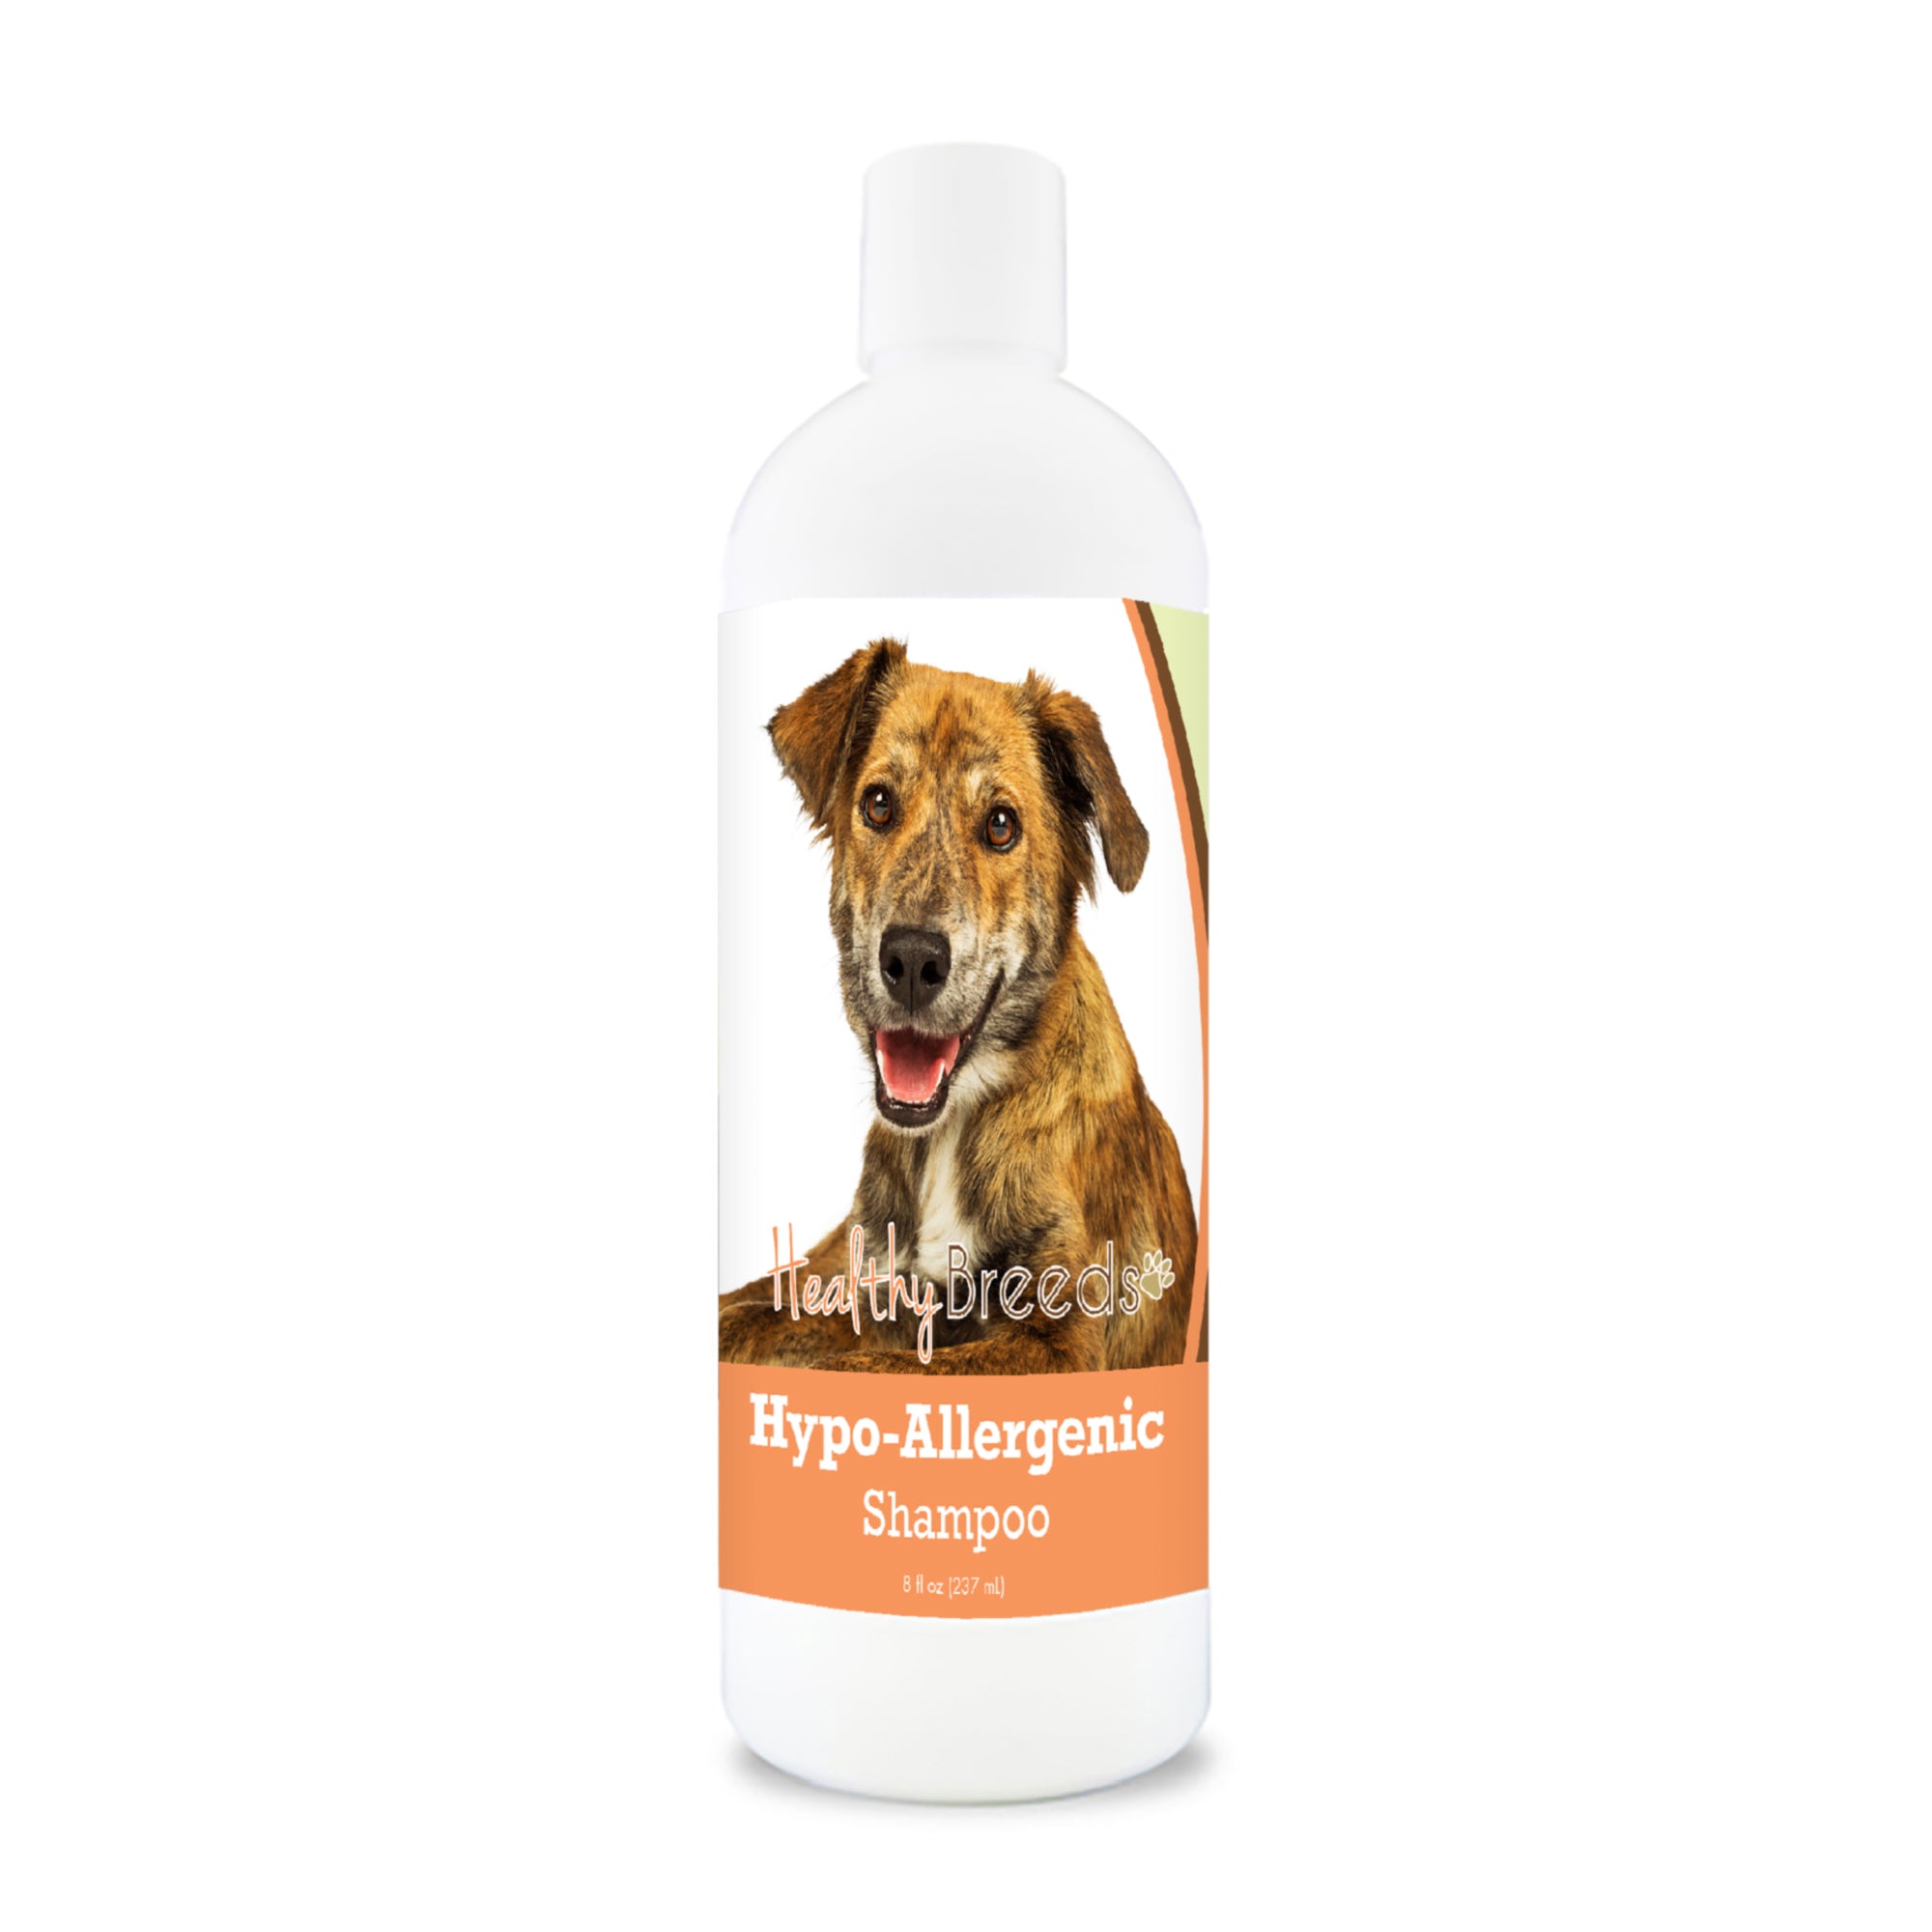 Plott Hypo-Allergenic Shampoo 8 oz